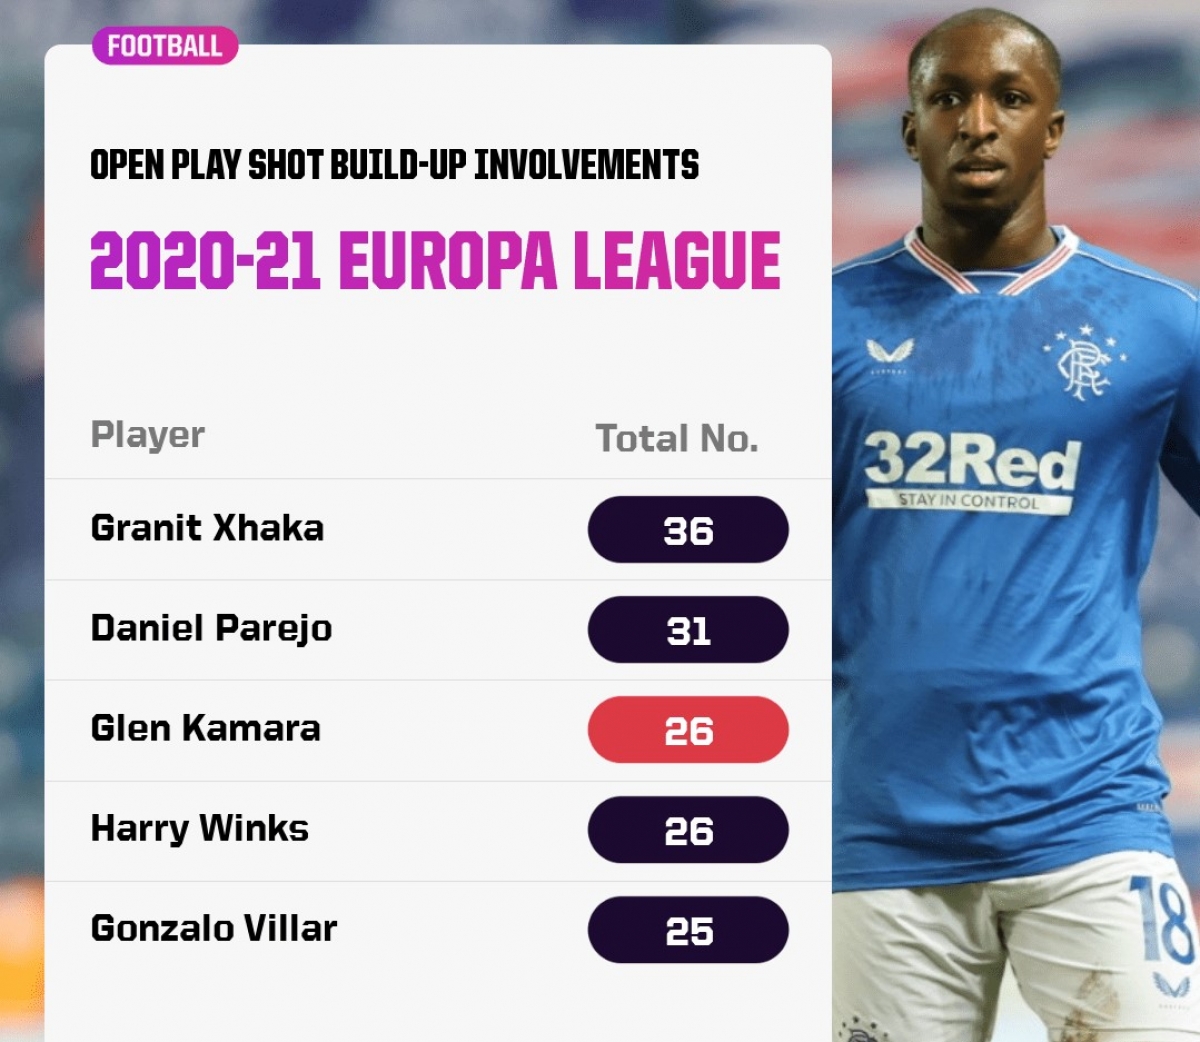 Danh sách top cầu thủ tham gia vào tình huống bóng mở nhiều nhất tại Europa League mùa 2020/21